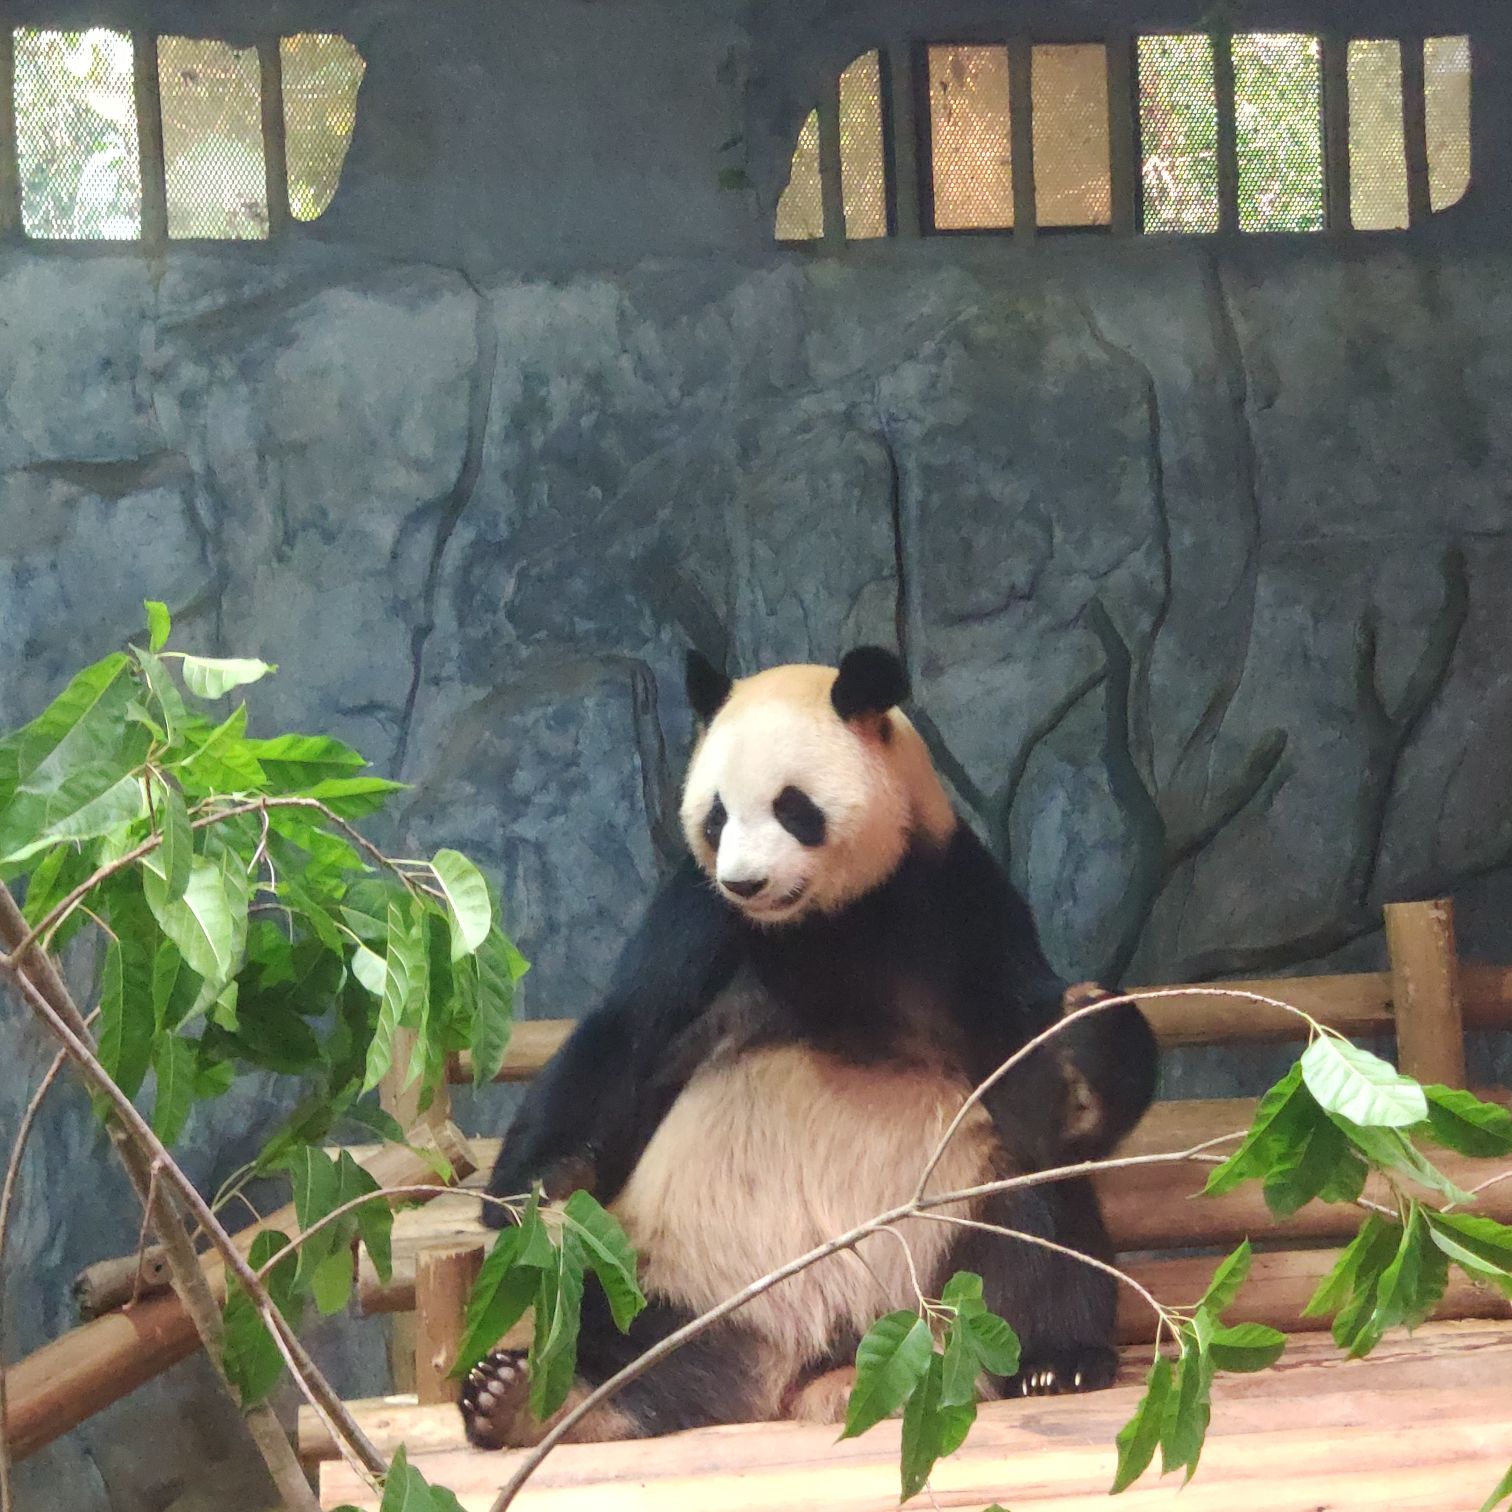 【携程攻略】深圳深圳野生动物园景点,很好玩，每年都会带孩子去逛逛。………………………………………………